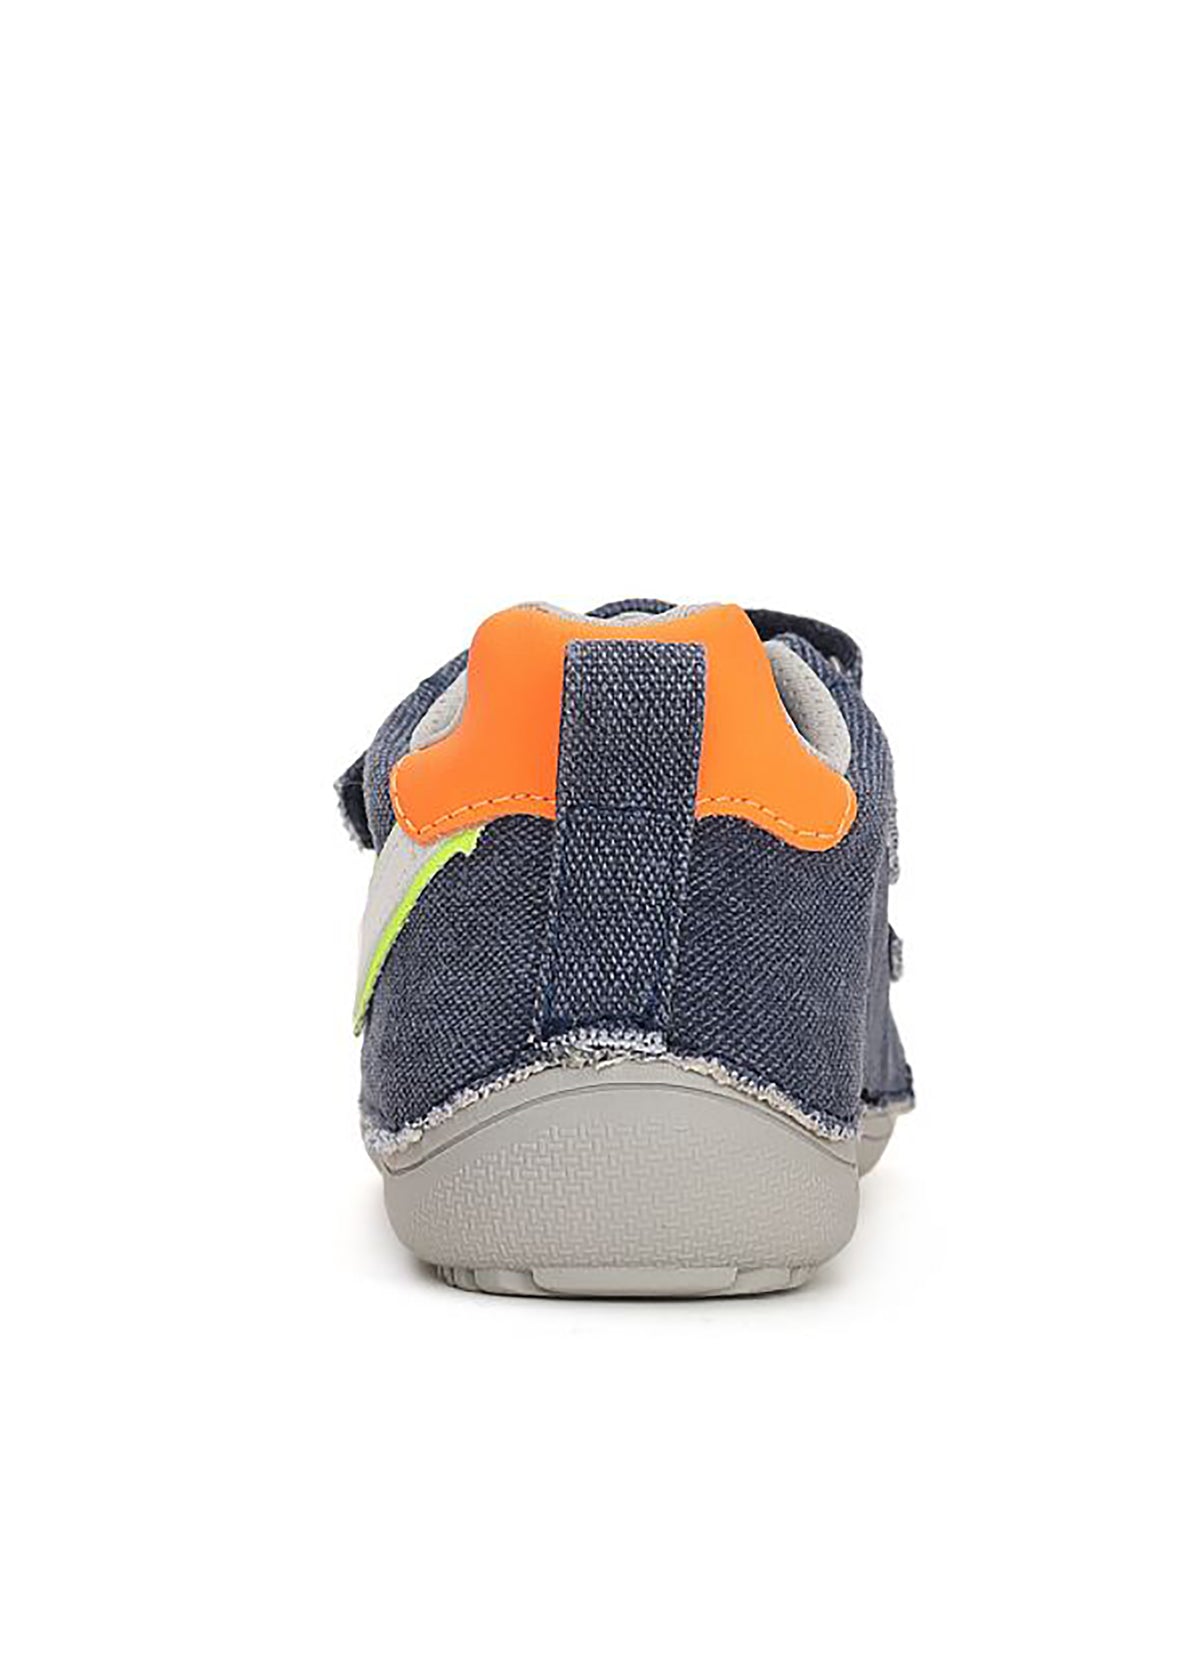 Children's barefoot sneakers - Denim blue canvas, orange-silver flash